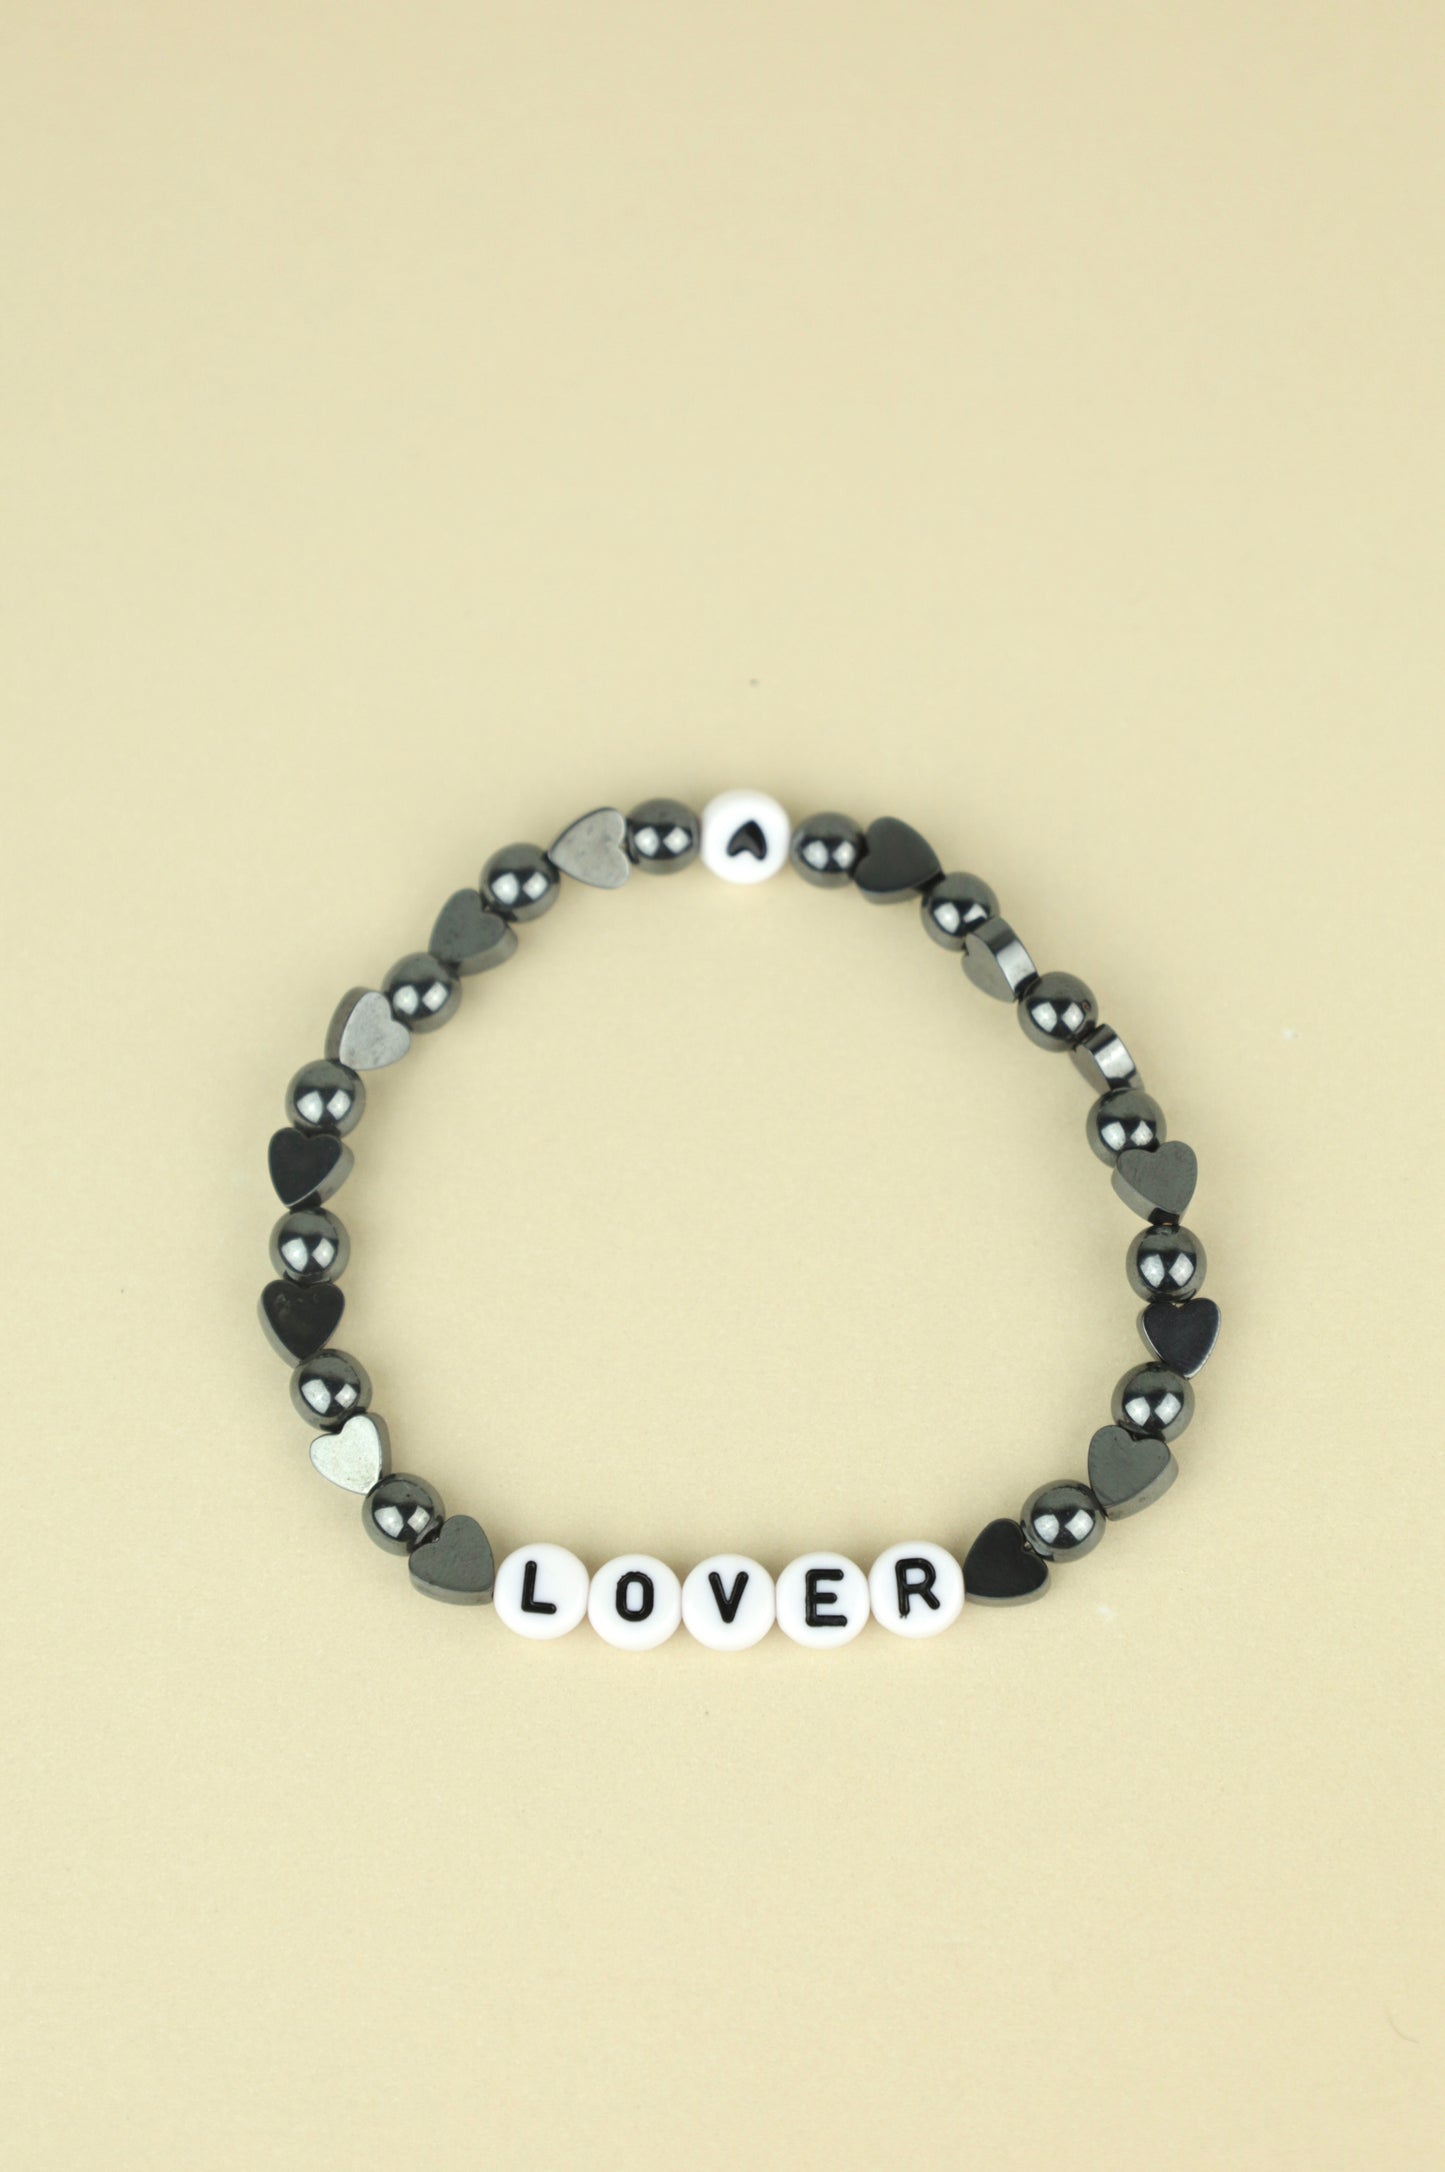 Lover Hematite bracelet